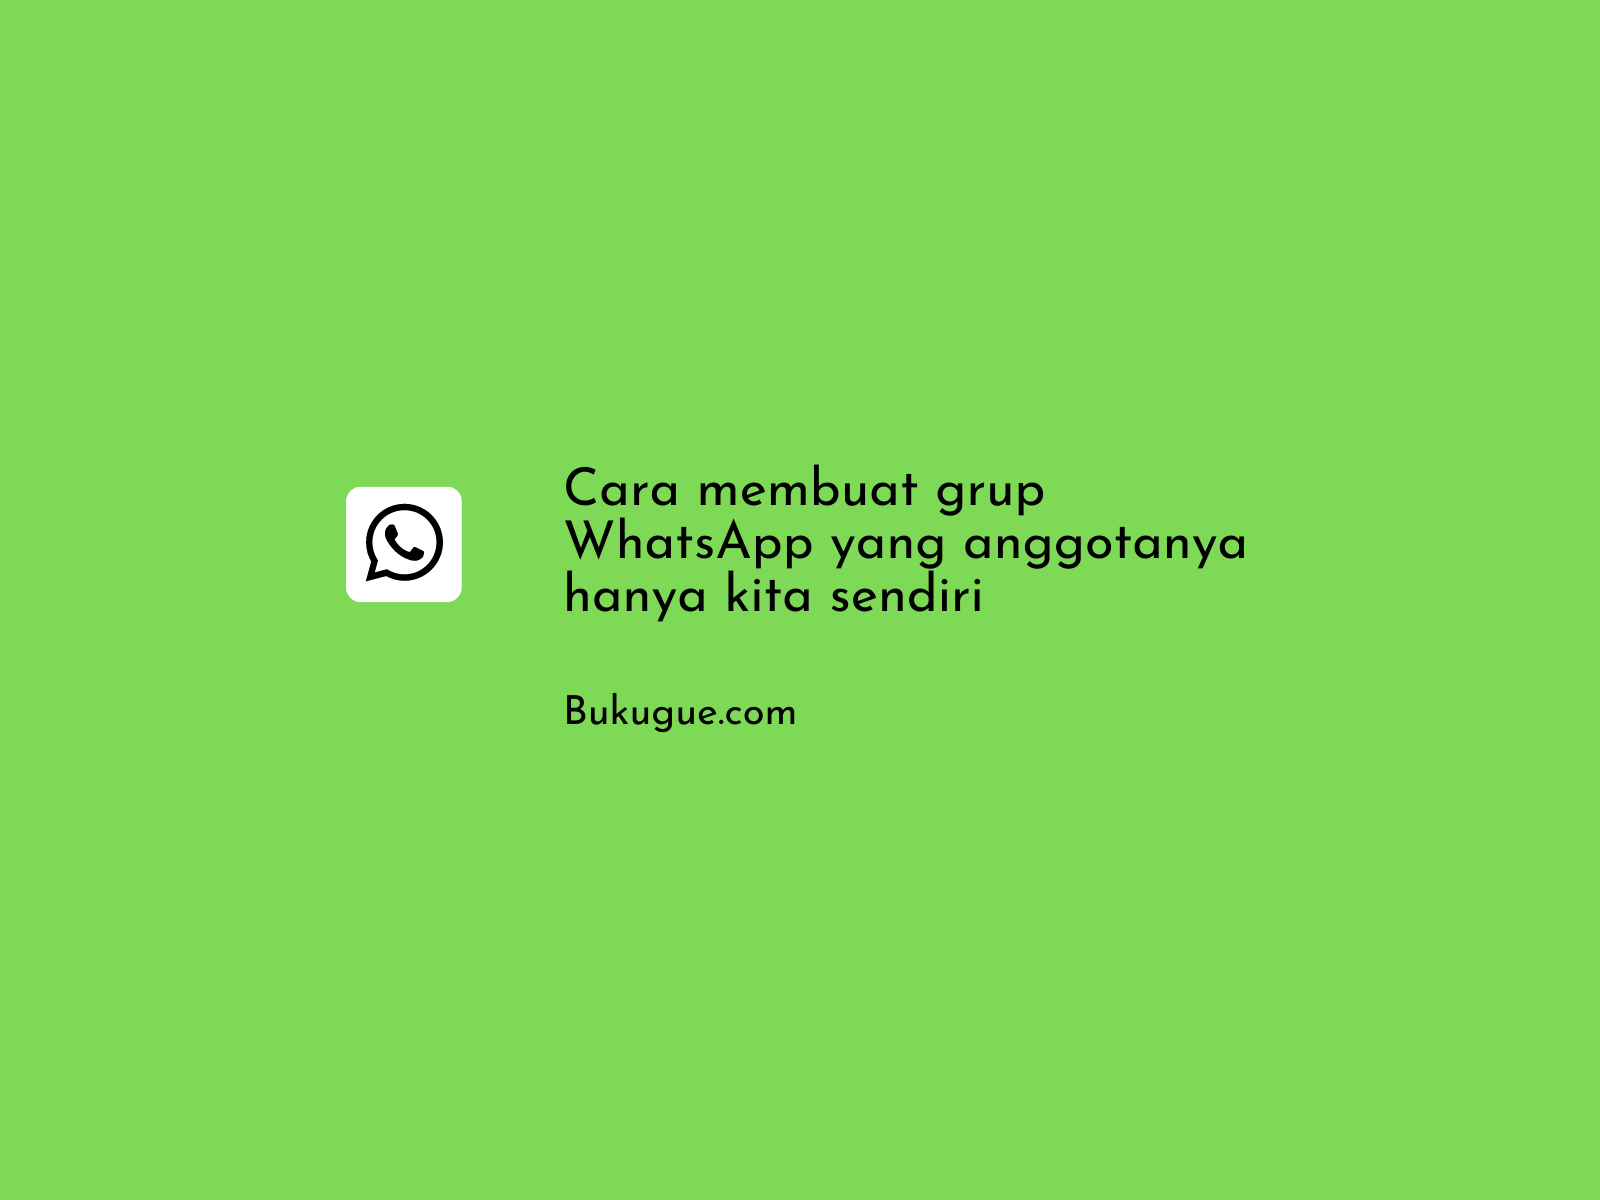 Cara membuat grup WhatsApp yang anggotanya hanya kita sendiri